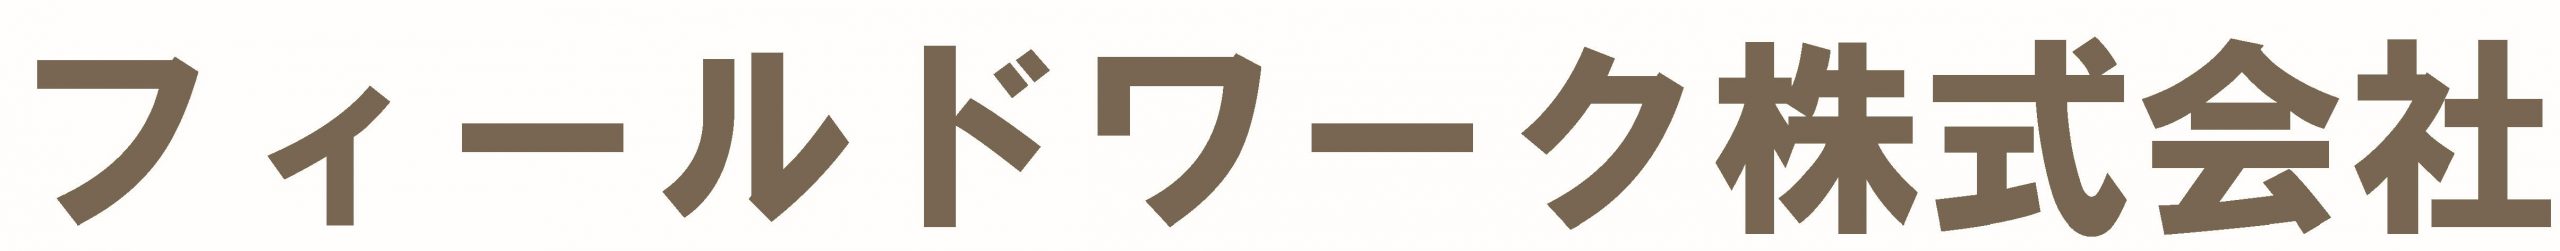 Fieldwork corp logo_jp_text